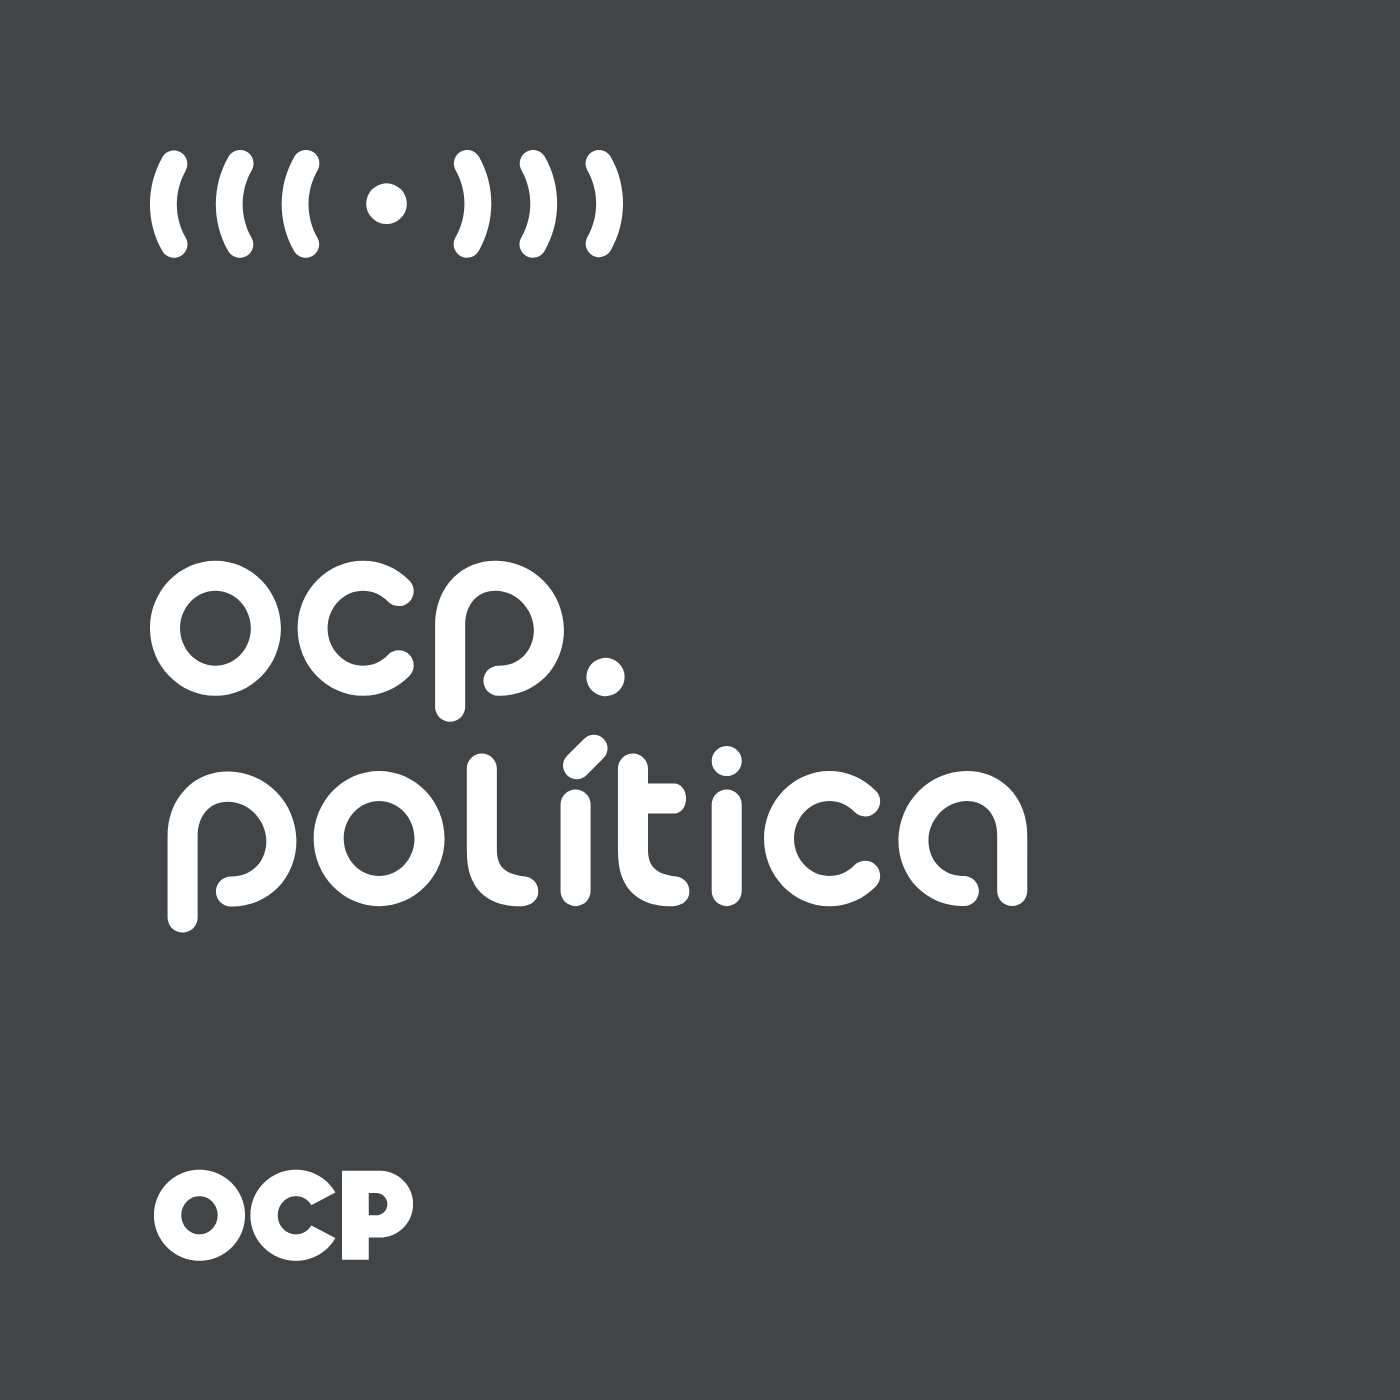 Podcast OCP Política: Entrevista com o Prefeito Antídio Lunelli - parte 05